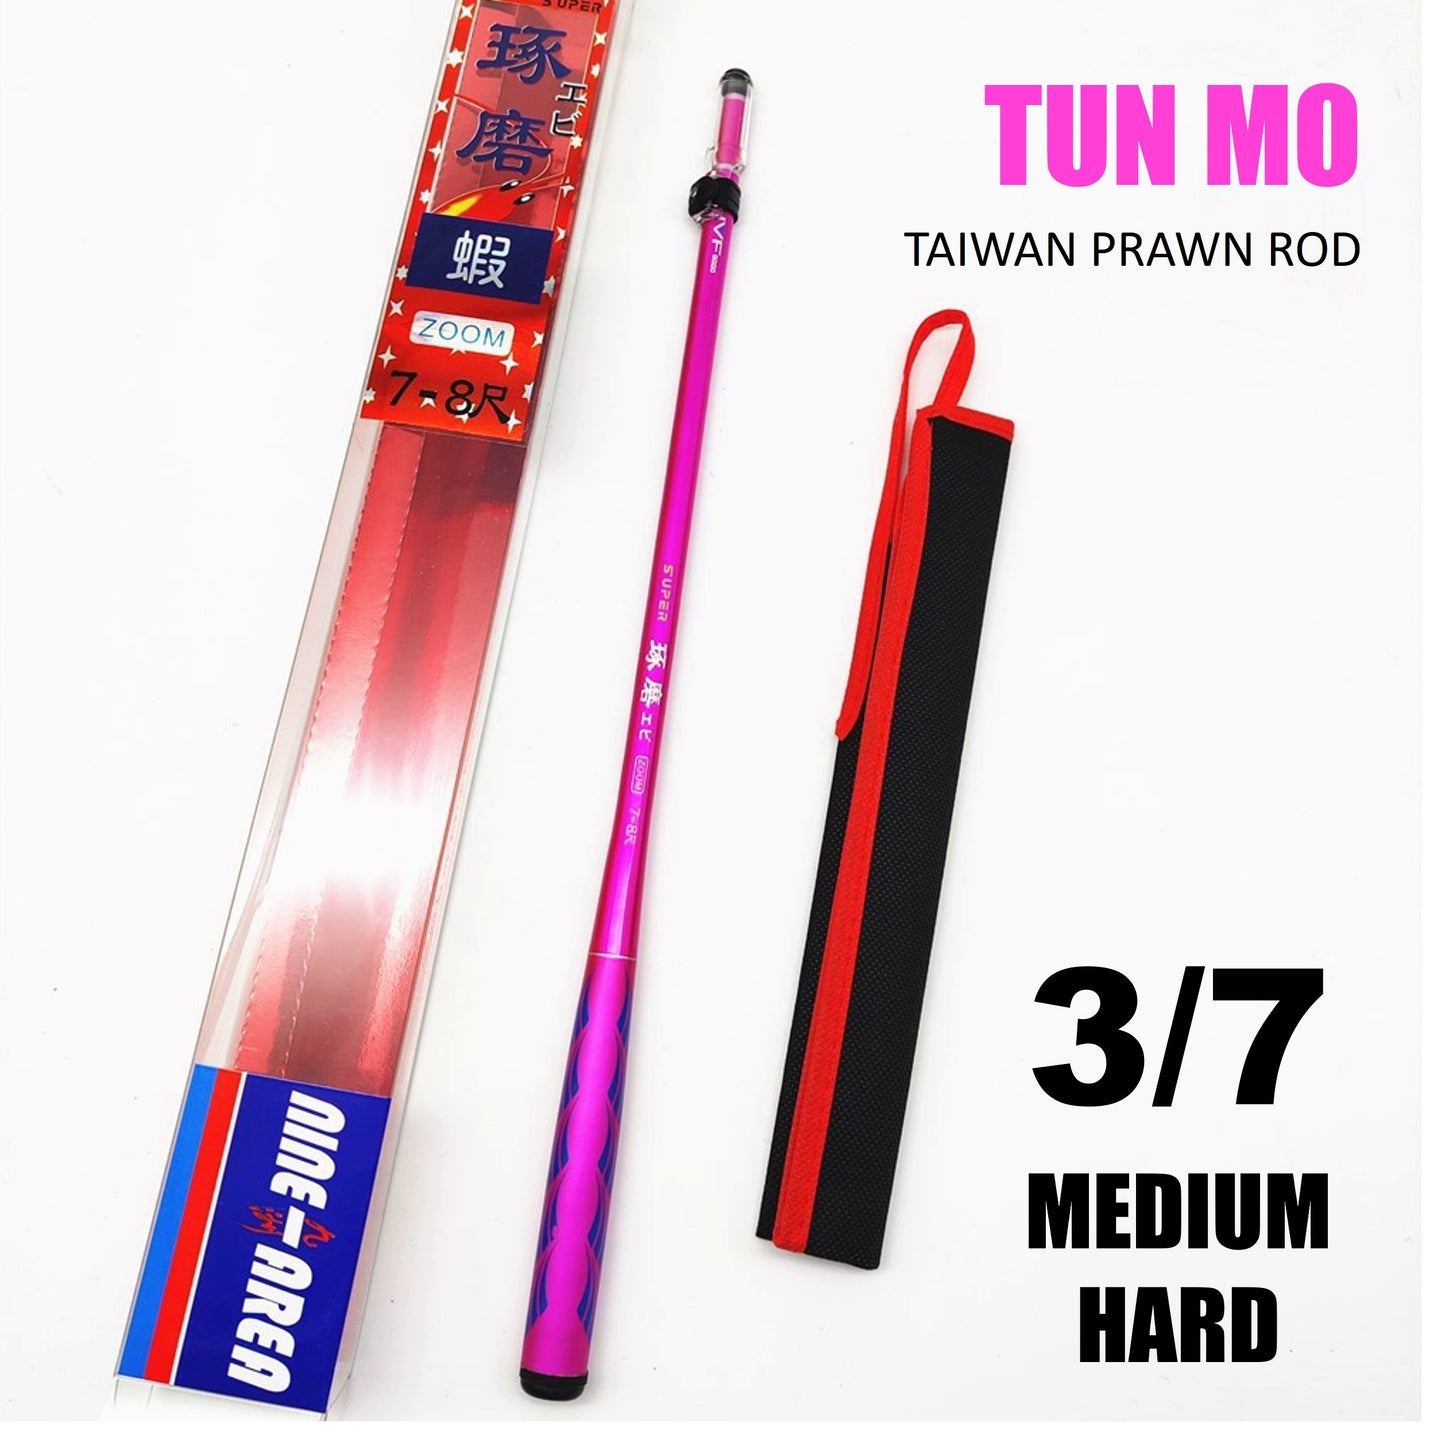 Tun Mo Prawn rod PR028